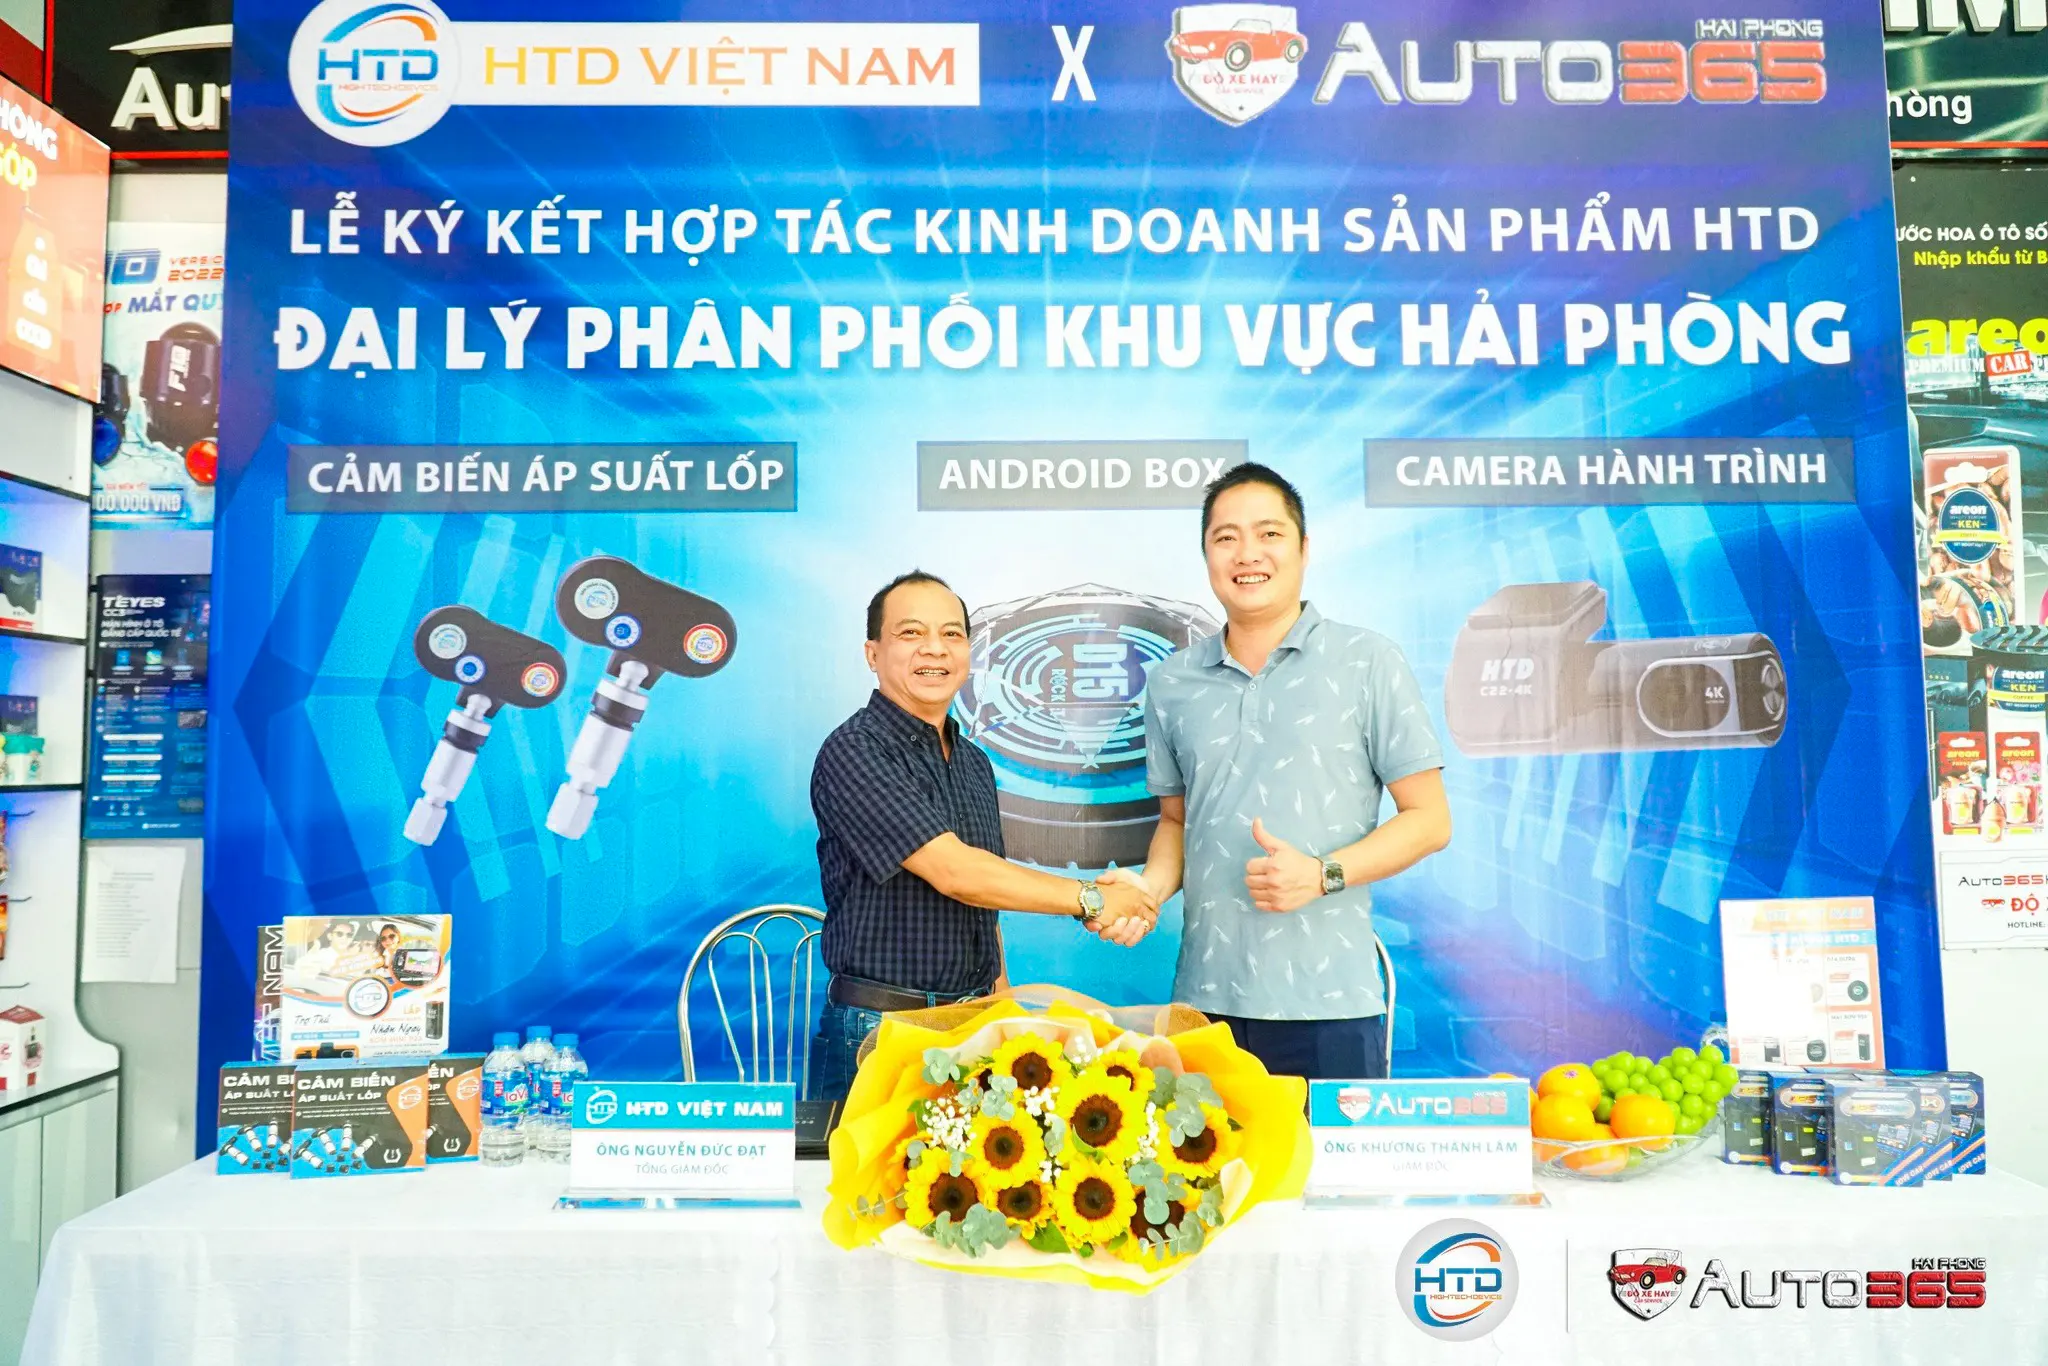 HTD Việt Nam ký kết hợp tác chiến lược với Auto 365 Hải Phòng